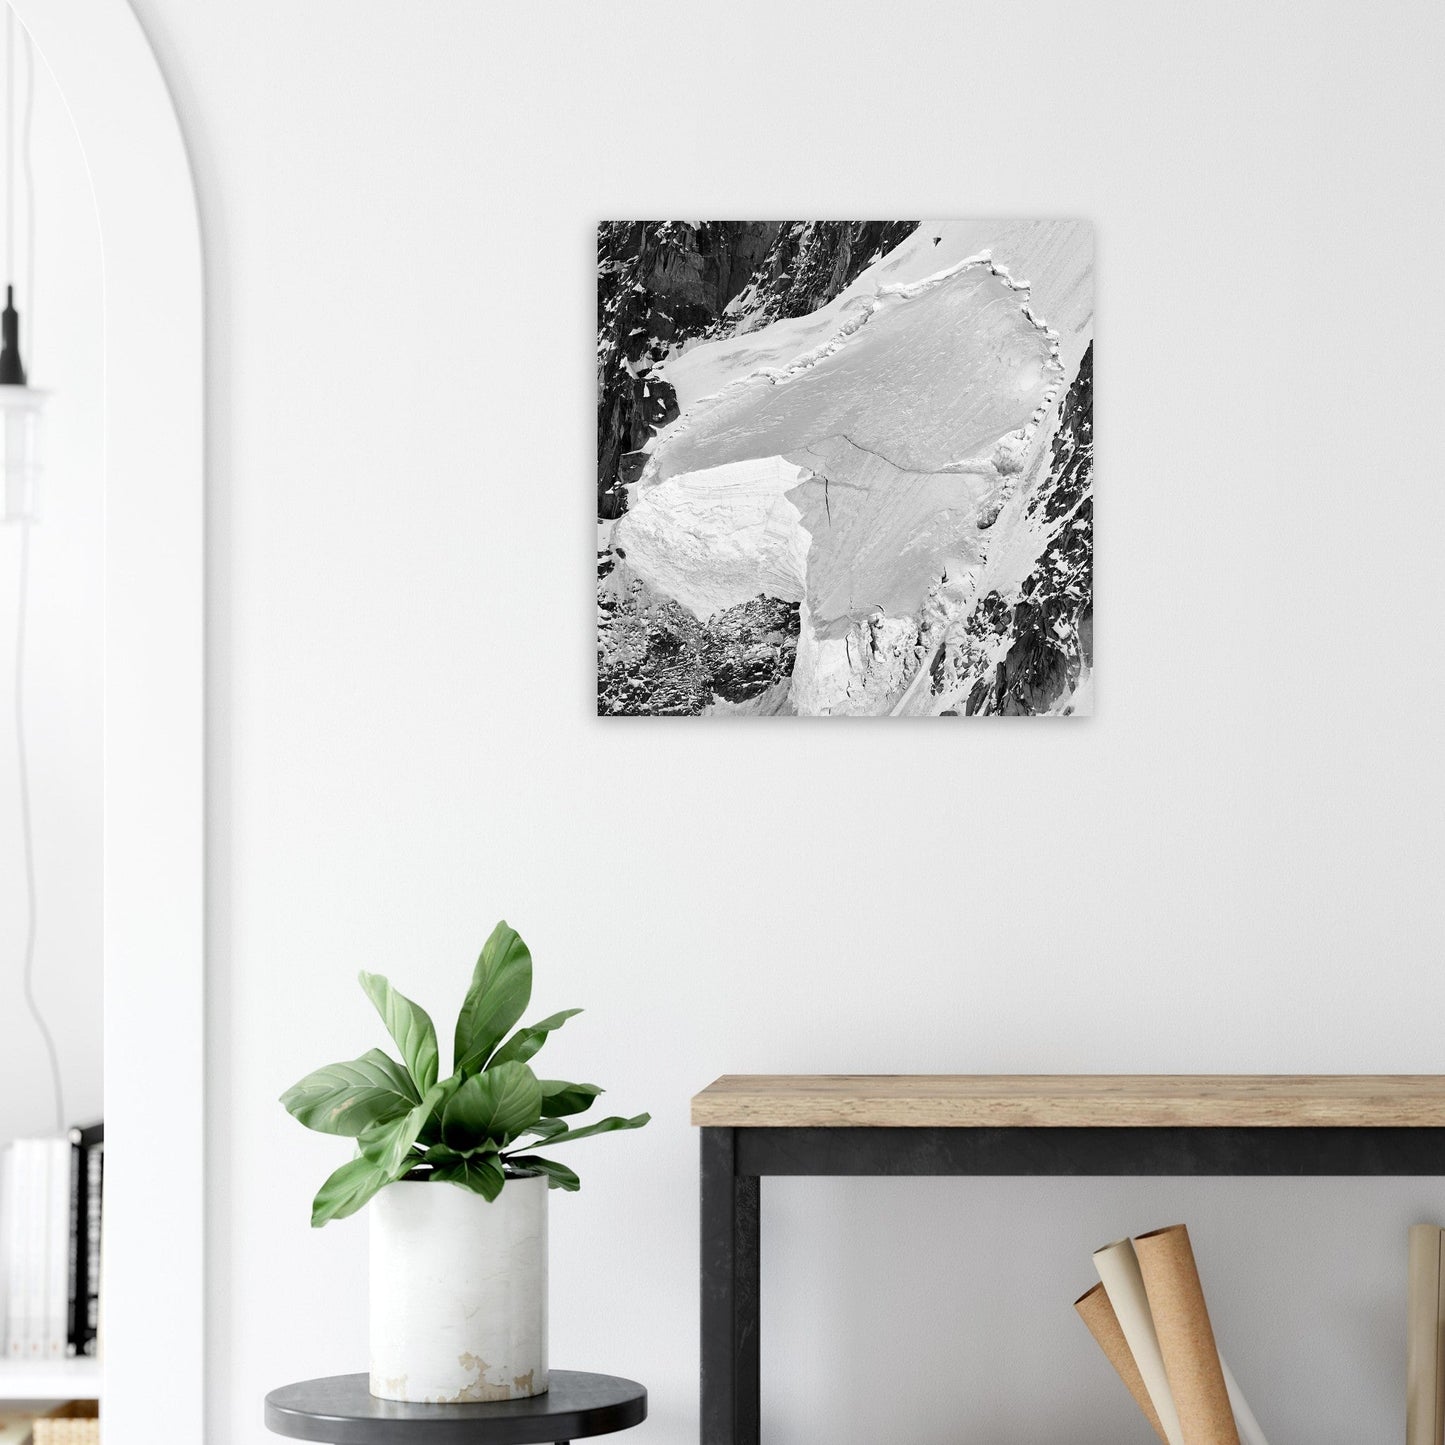 Vente Photo d'une plaque de glace et crevasse - Noir & Blanc - Tableau photo alu montagne